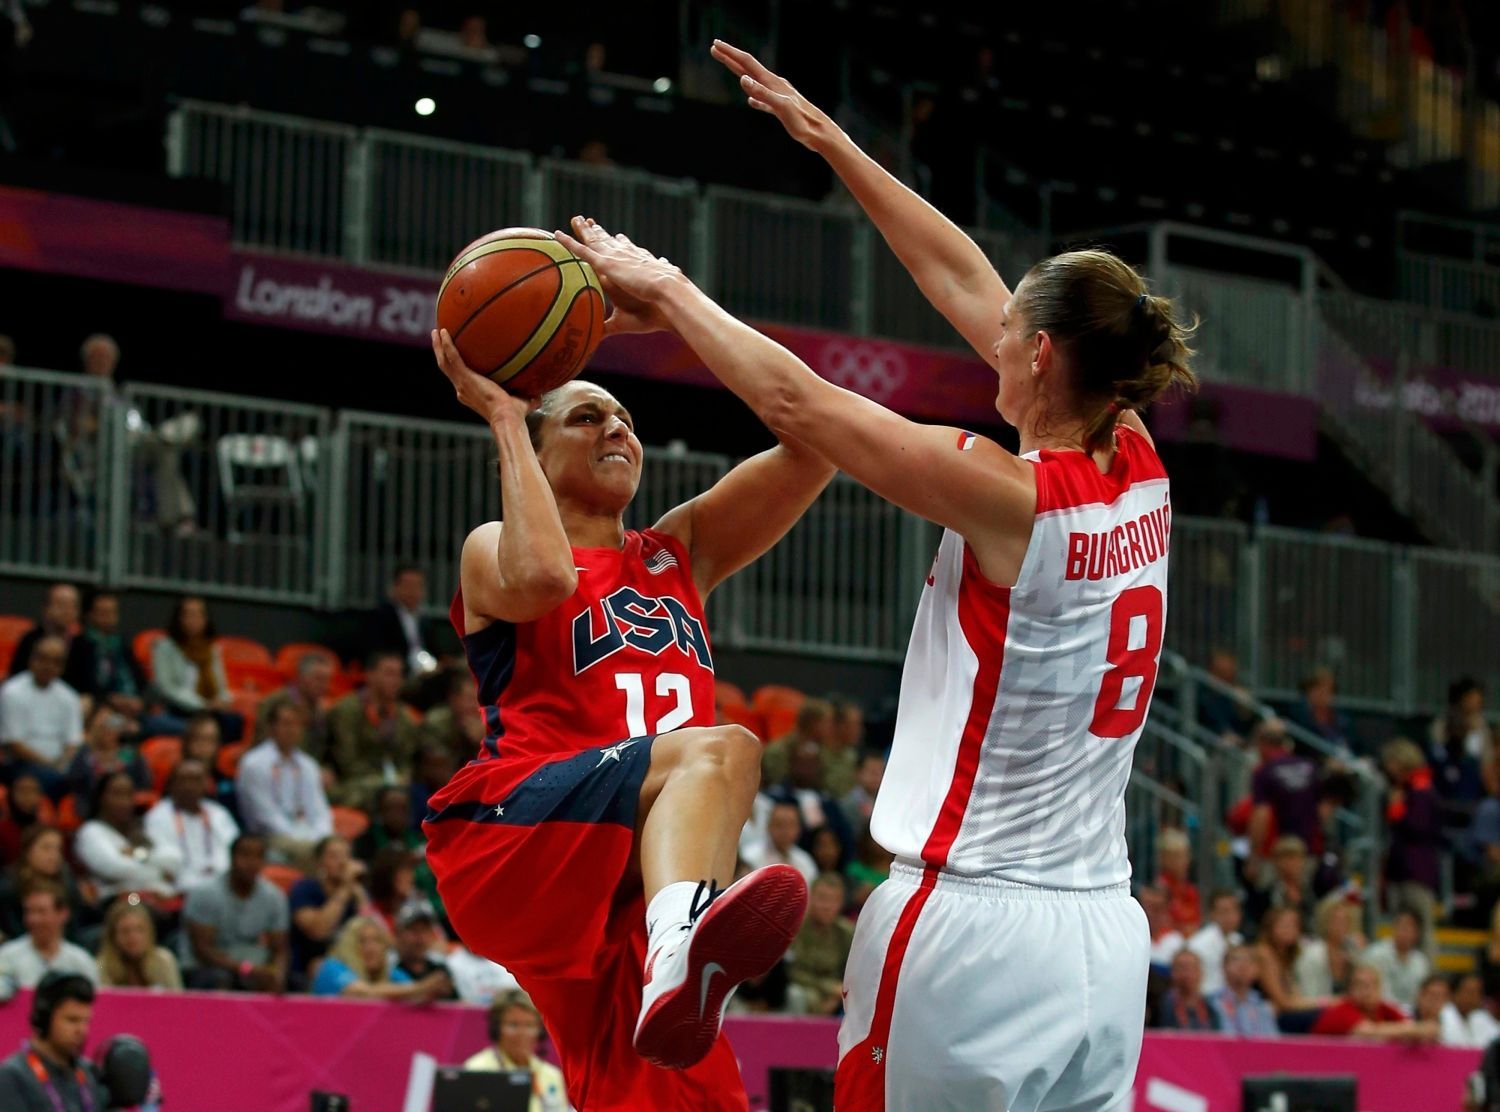 Česká basketbalistka Ilona Burgrová brání ve střelbě Američance Dianě Taurasiové v utkání skupiny A na OH 2012 v Londýně.